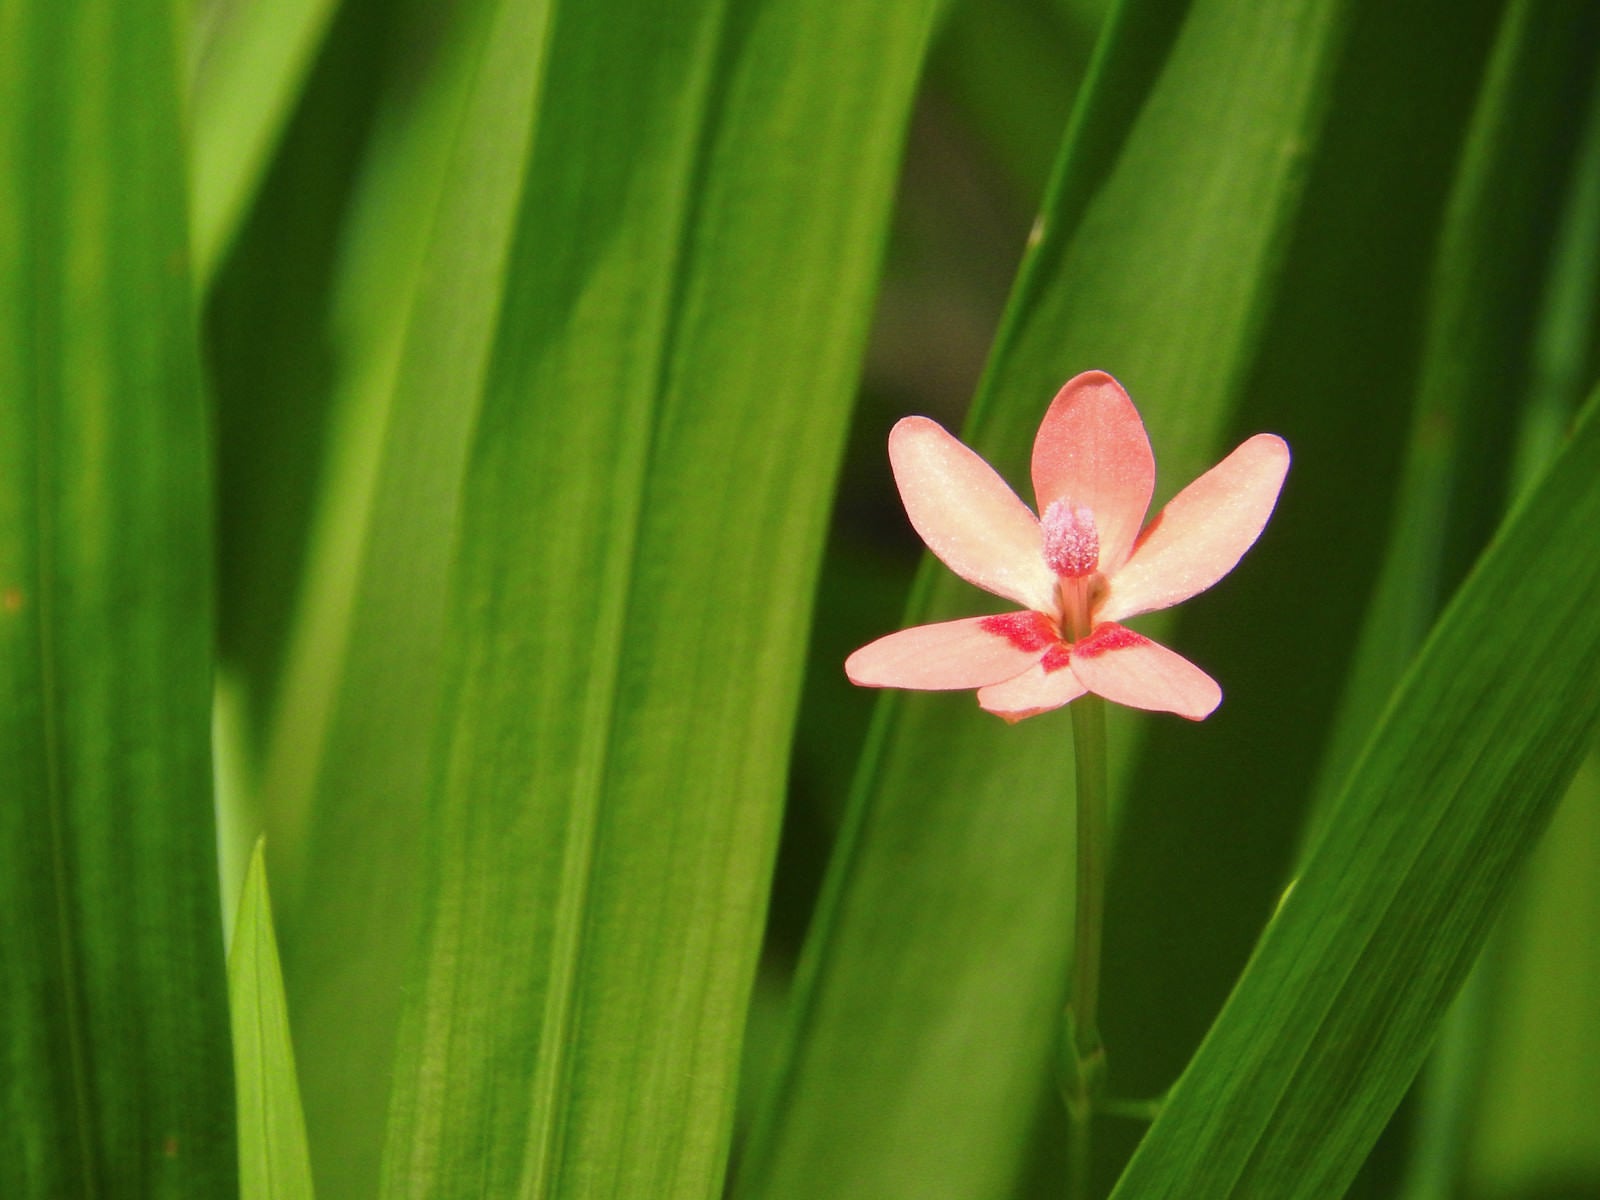 「控えめに咲くヒメヒオウギの花」の写真